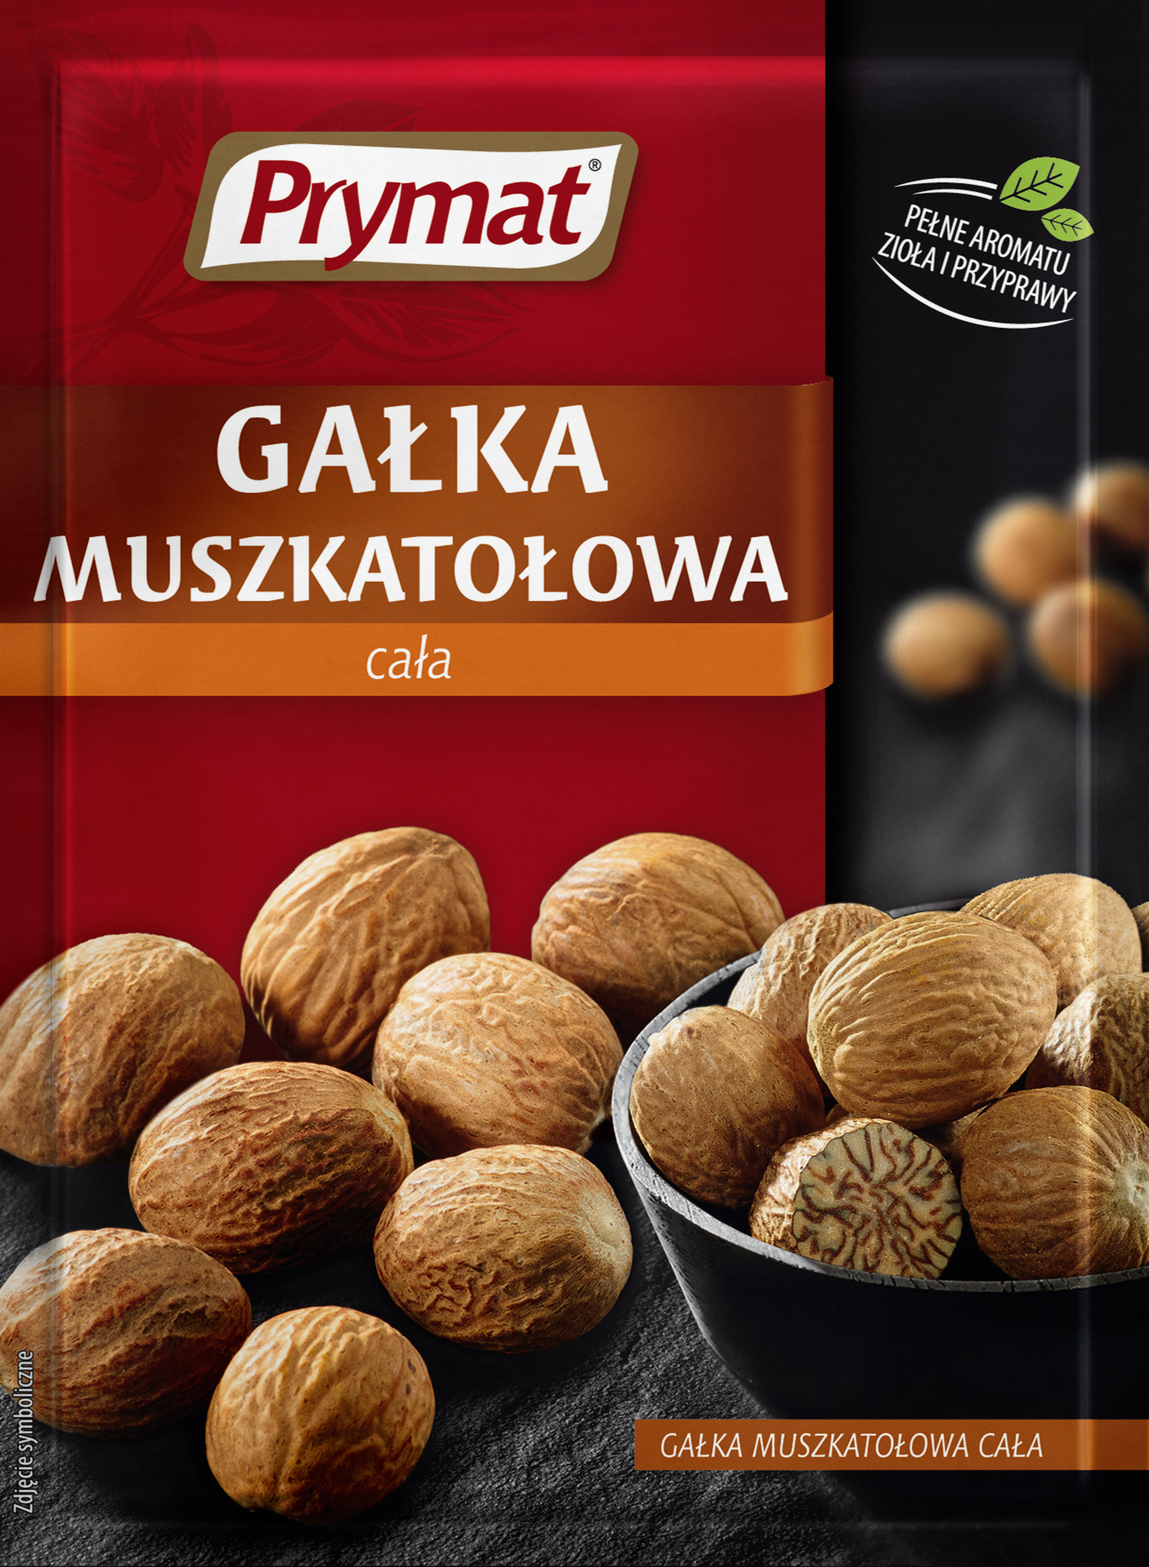 Picture of GALKA MUSZKATOLOWA CALA 9G PRYMAT